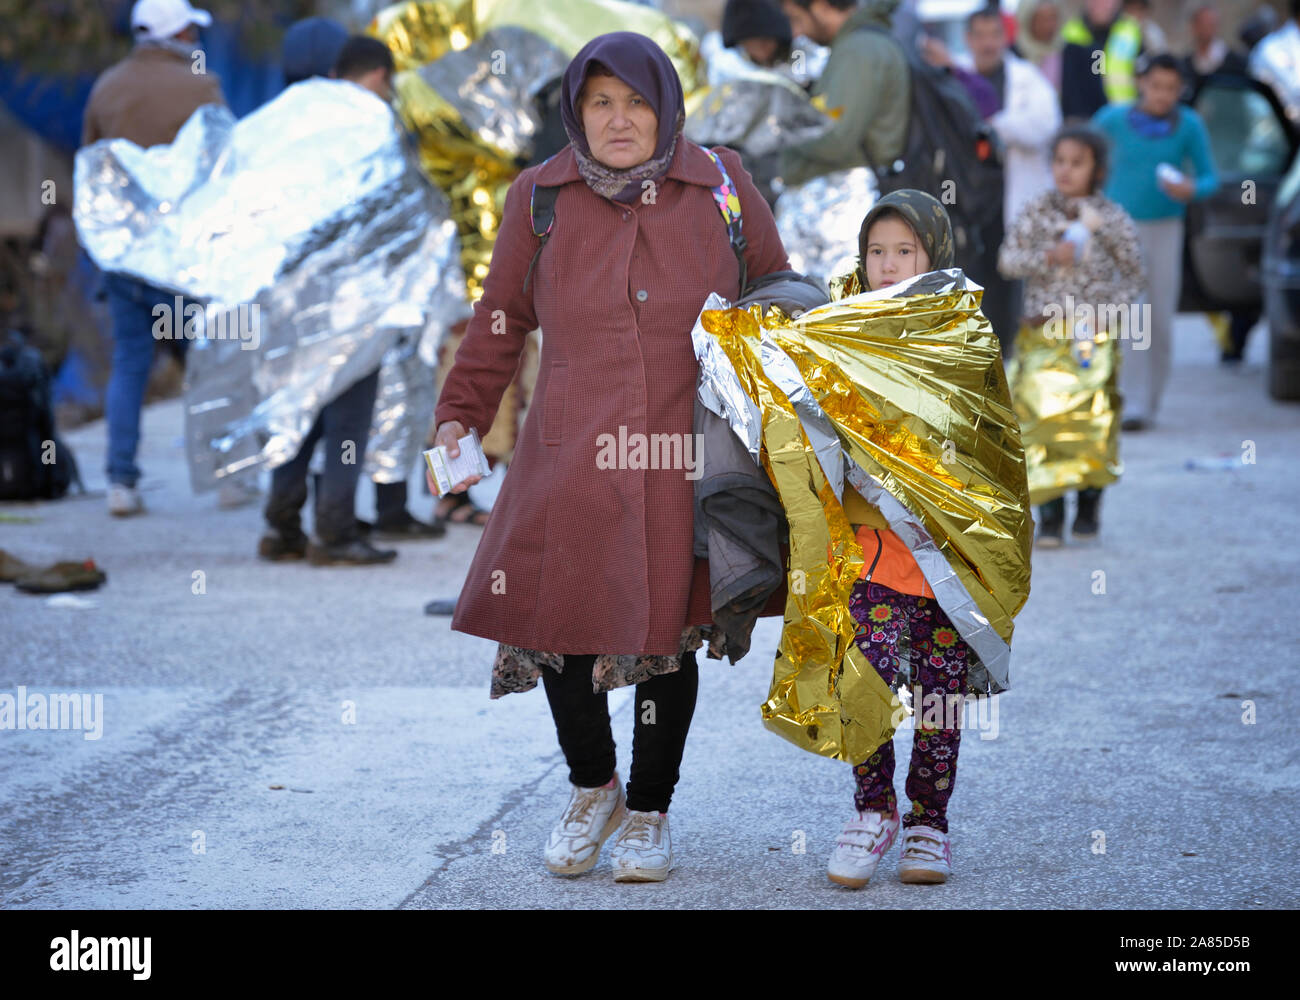 Les réfugiés qui arrivent sur la plage près de Molyvos, sur l'île grecque de Lesbos, sont souvent froids et humides après leur voyage sur la mer Egée. Banque D'Images